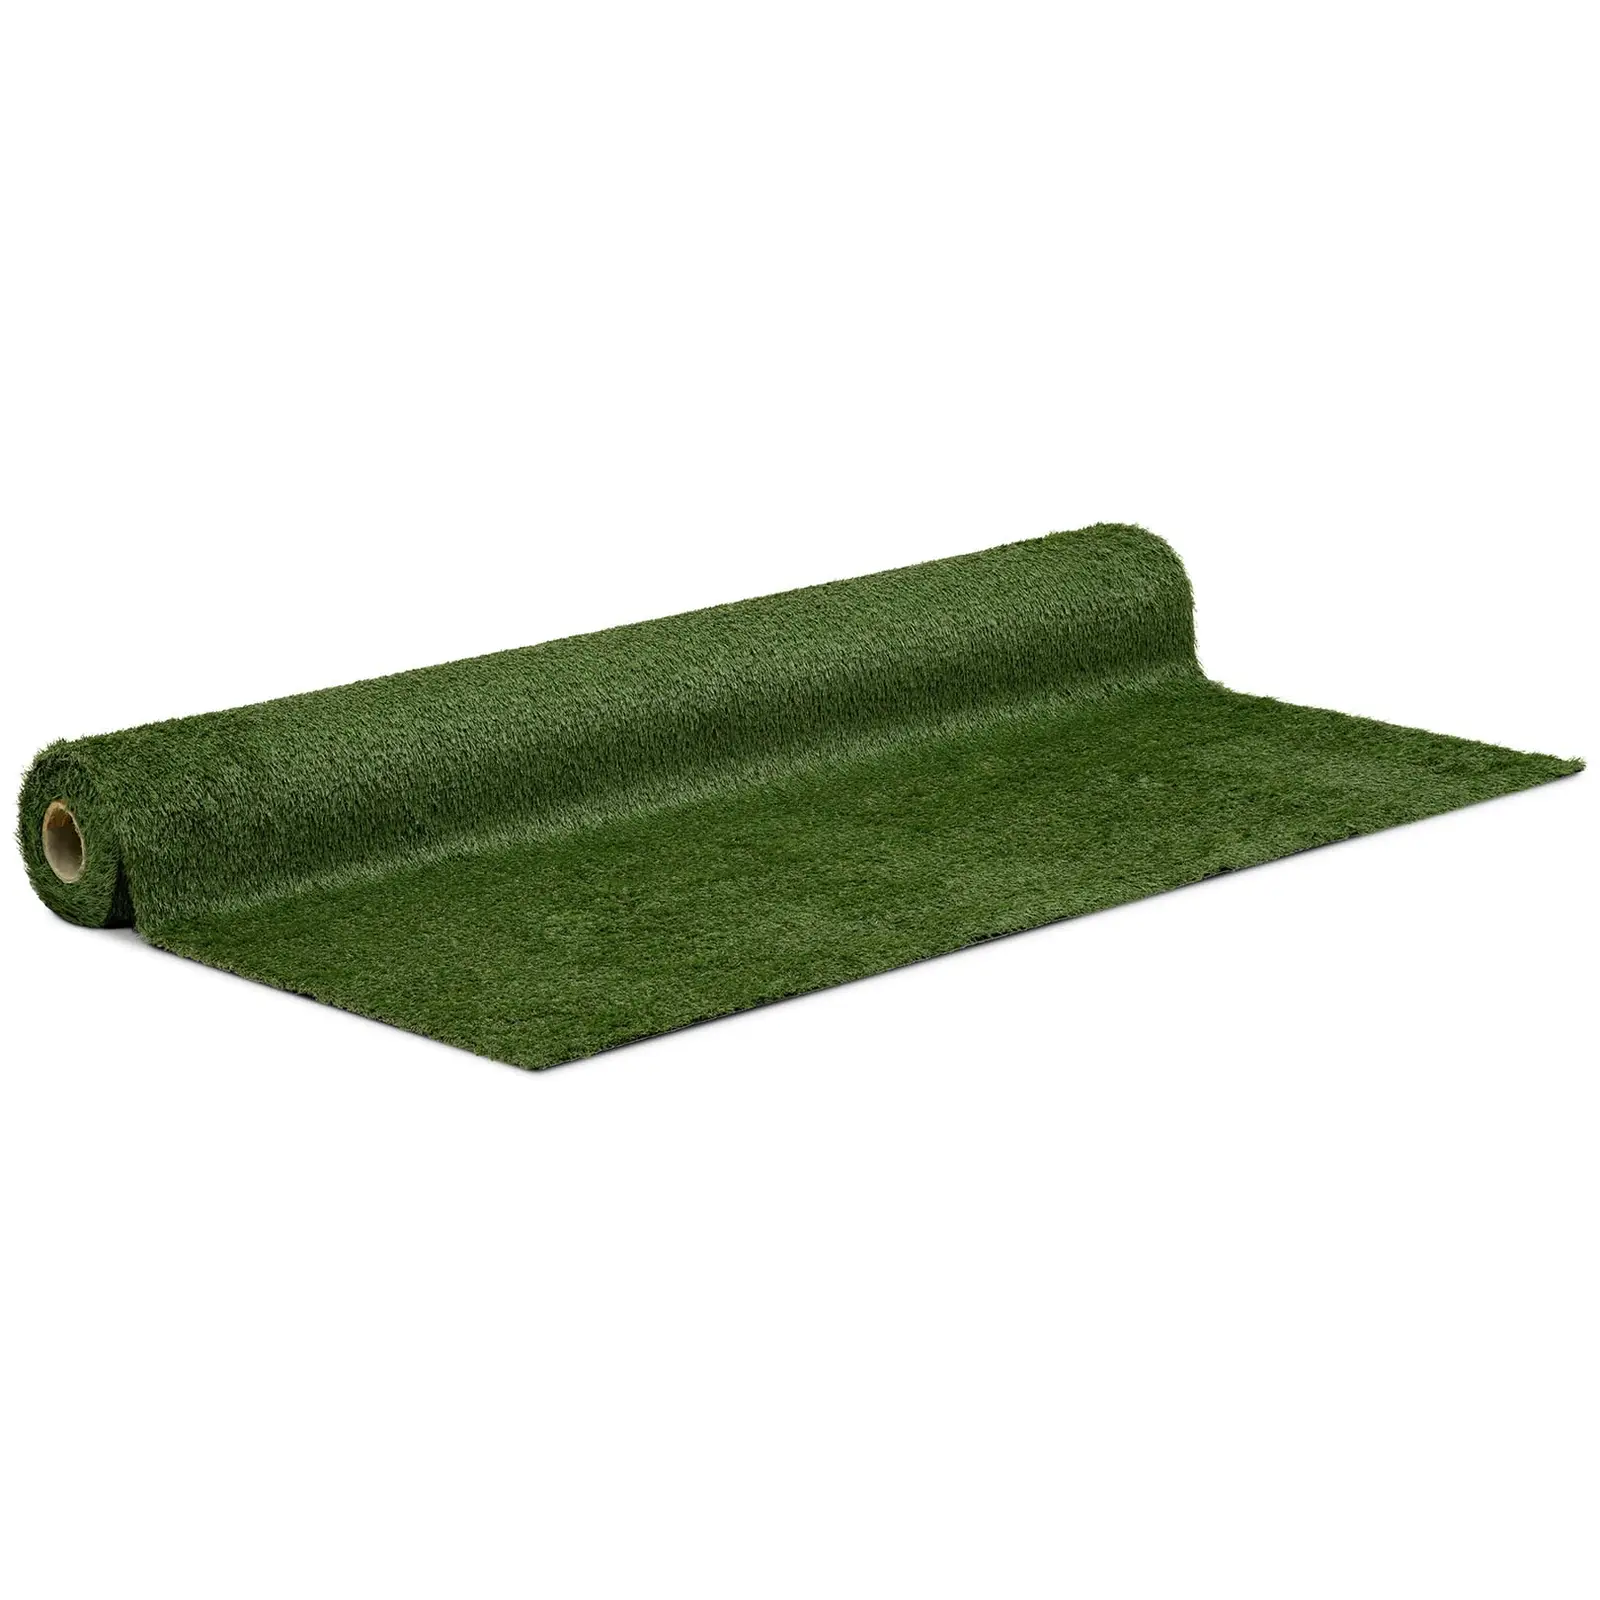 Umělý trávník 1020 x 200 cm výška: 30 mm hustota stehů: 14/10 cm odolný proti UV záření - Umělé trávníky hillvert